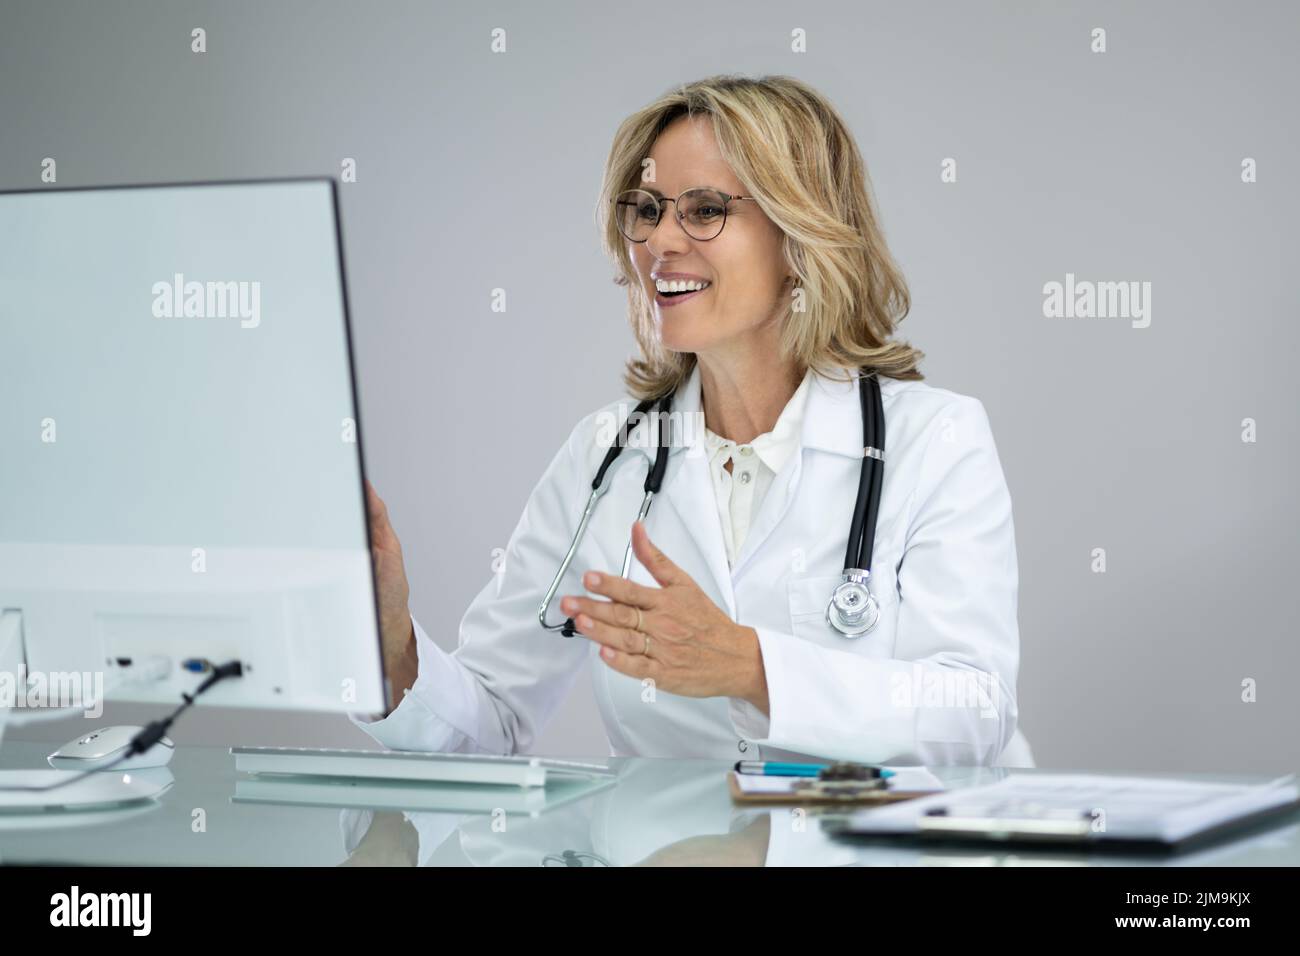 Appel de vidéoconférence avec un médecin sur un ordinateur de bureau Banque D'Images